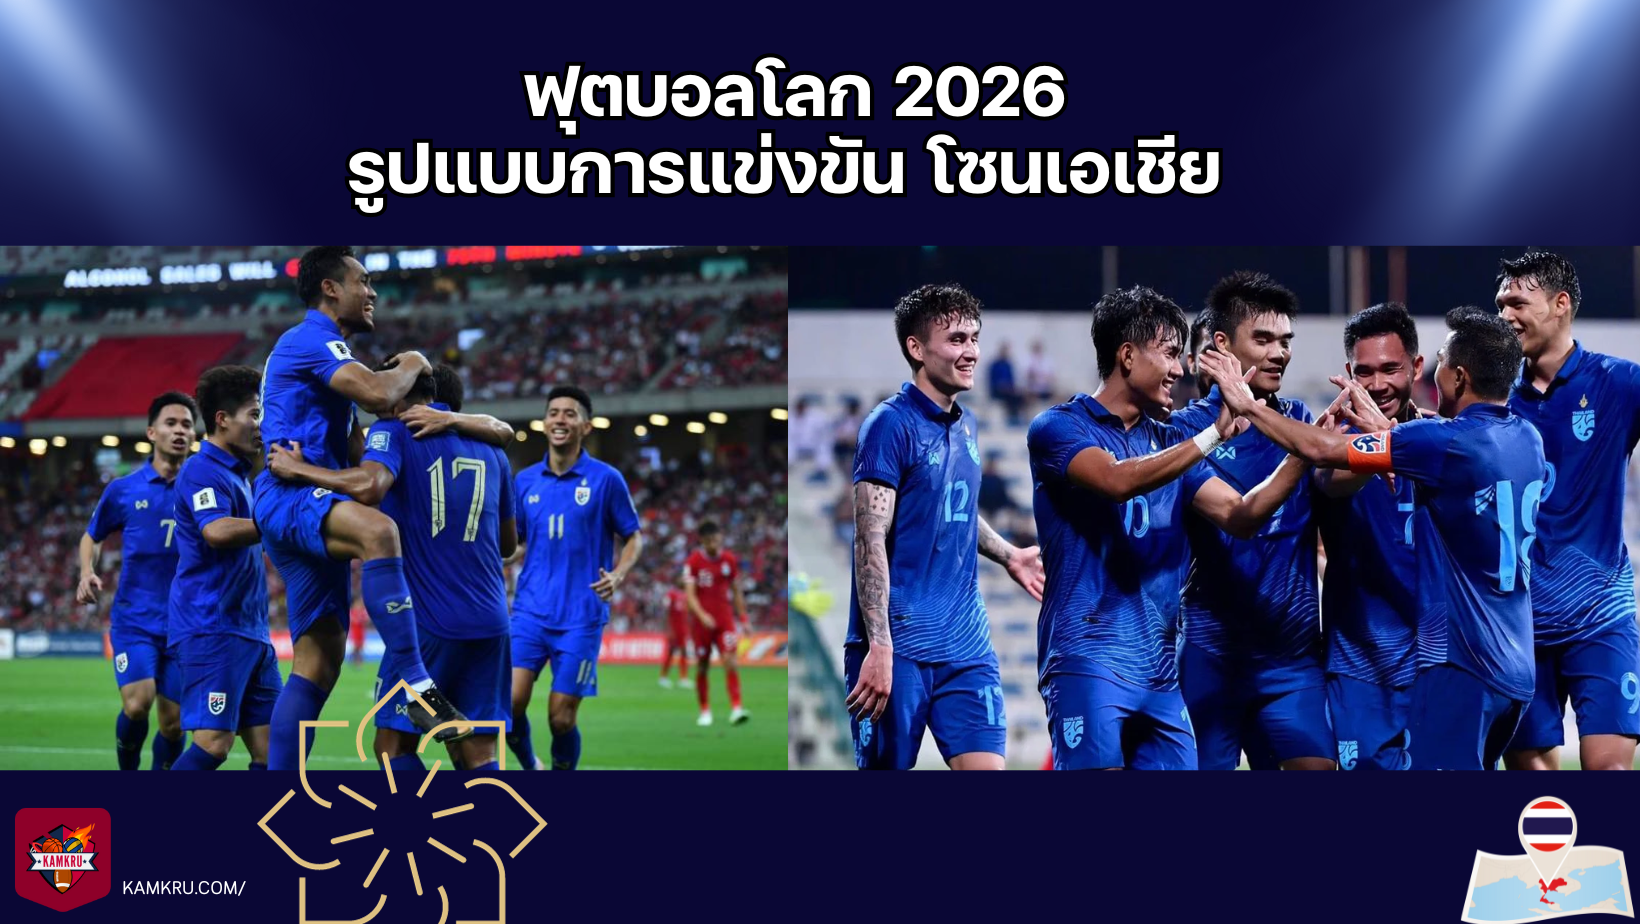 ฟุตบอลโลก 2026 — รูปแบบการแข่งขัน โซนเอเชีย